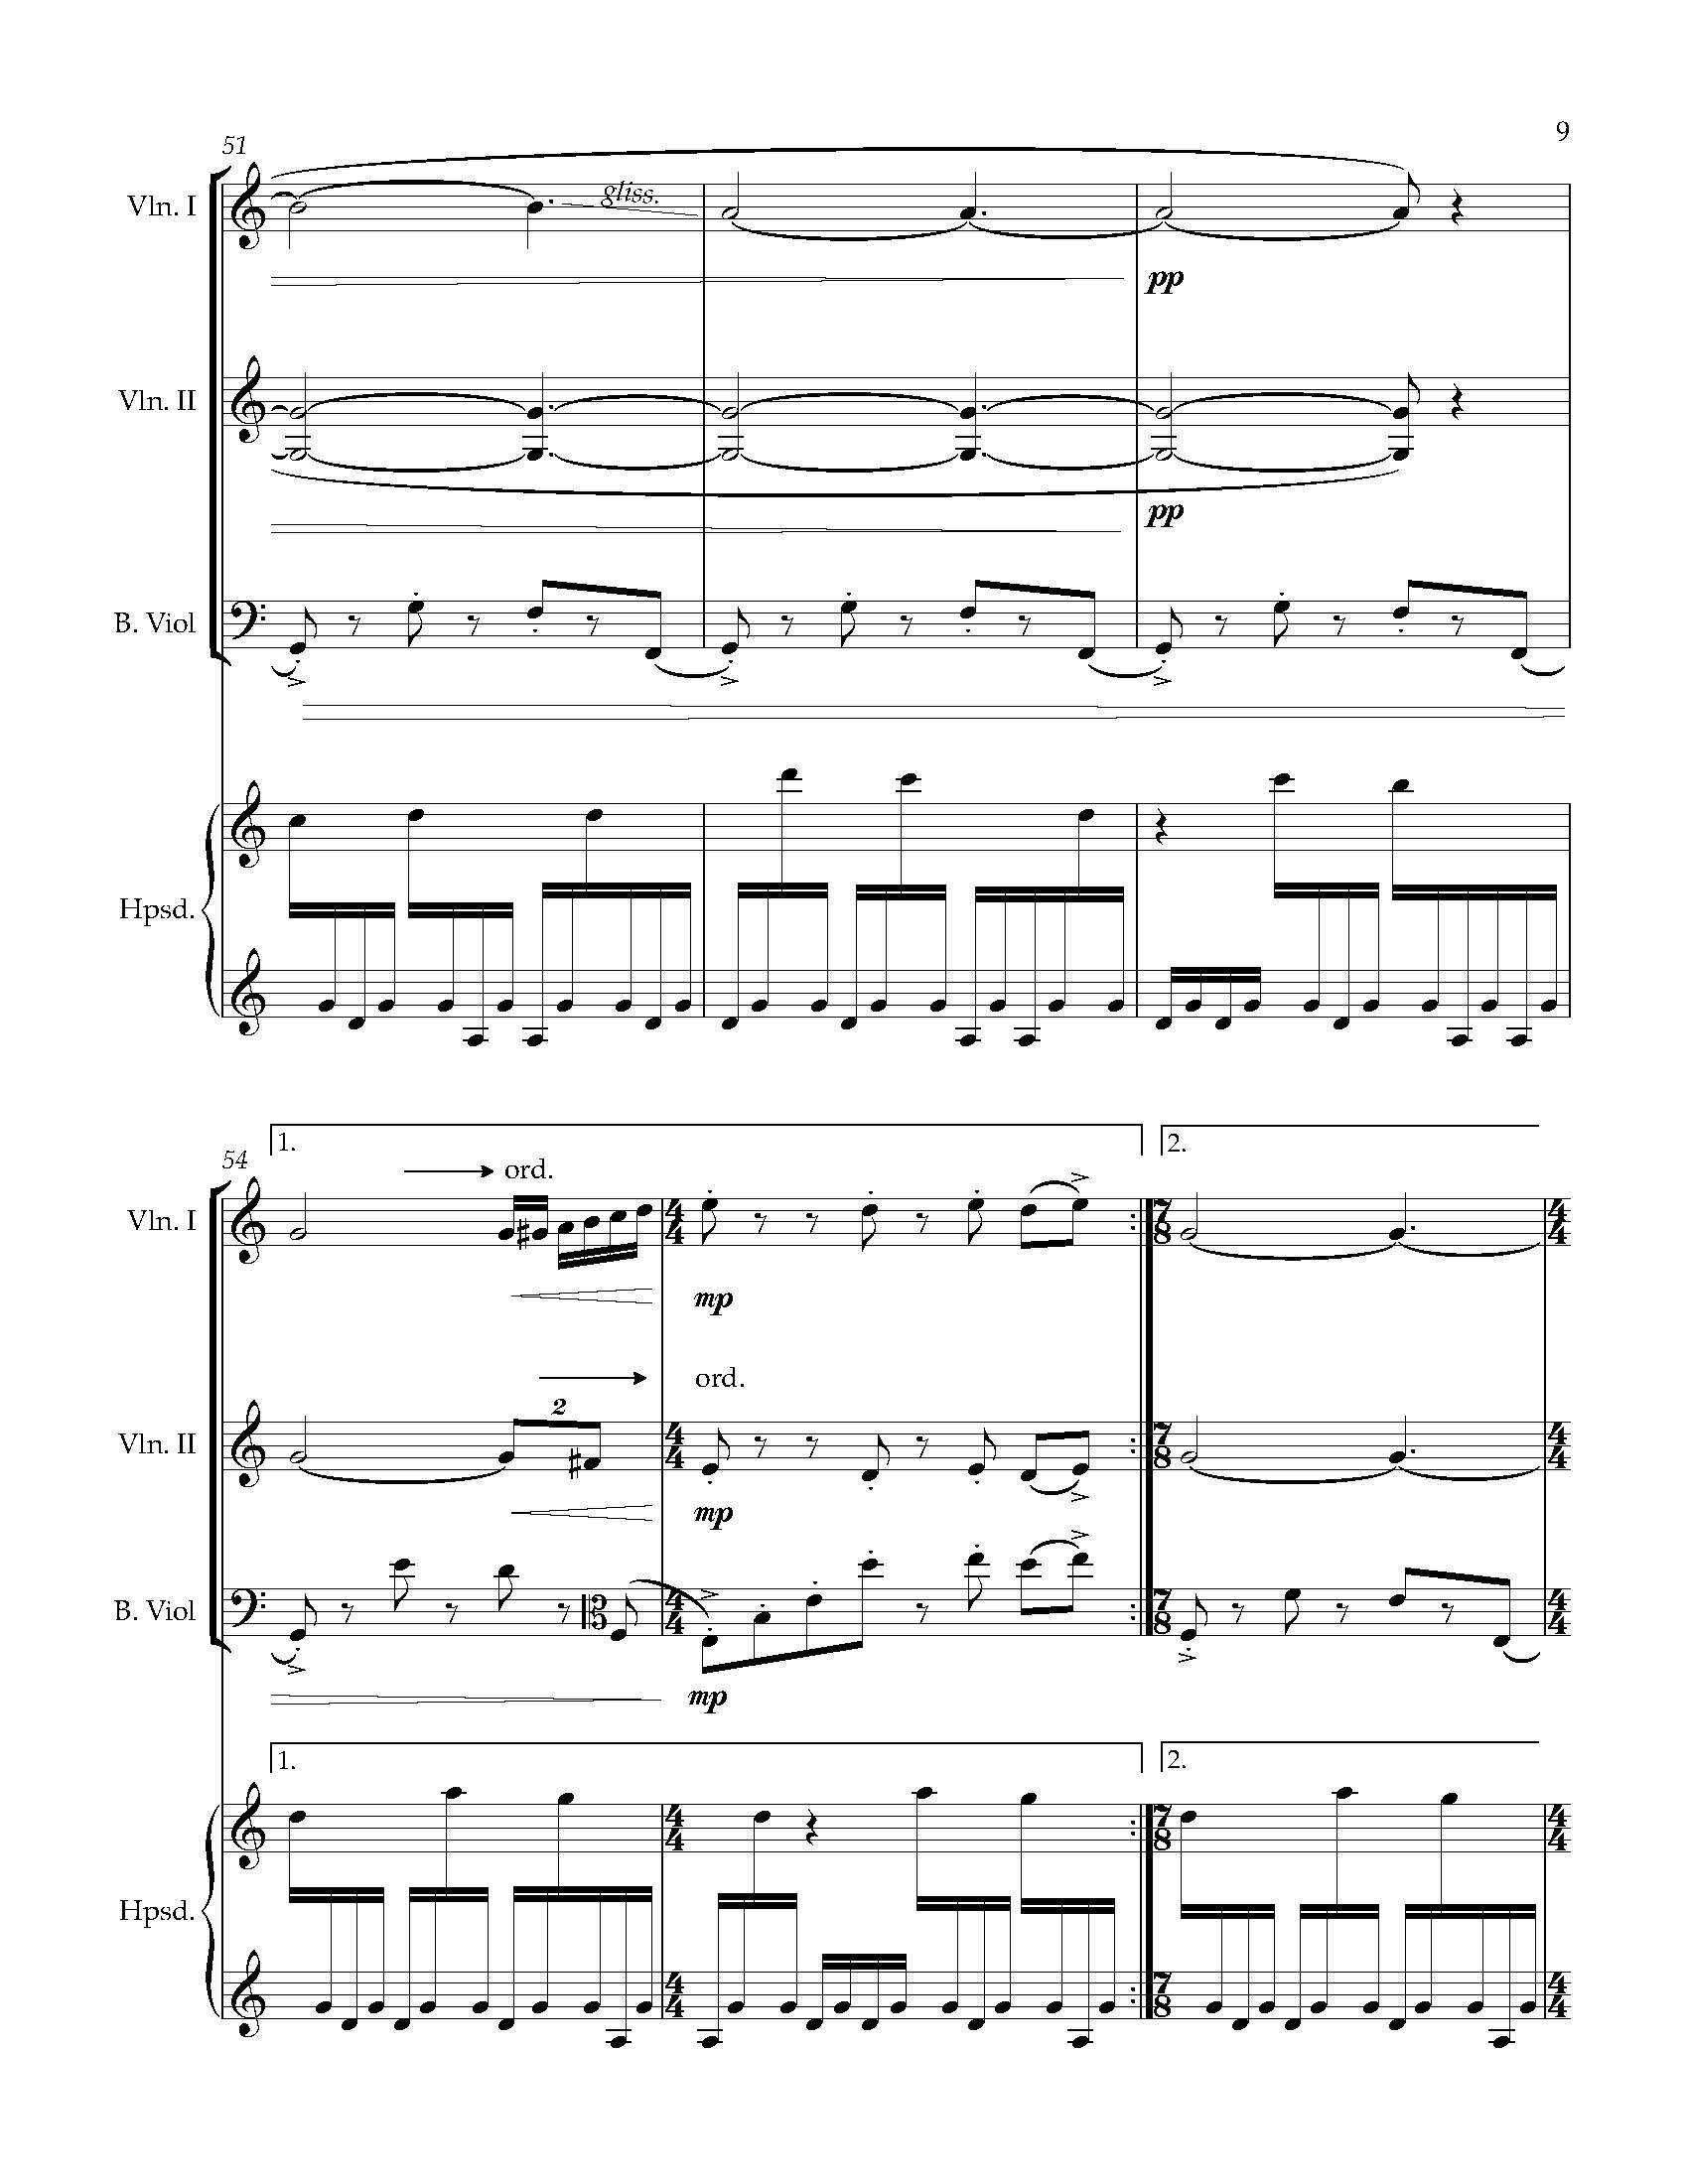 Sonata Sonare - Complete Score_Page_15.jpg